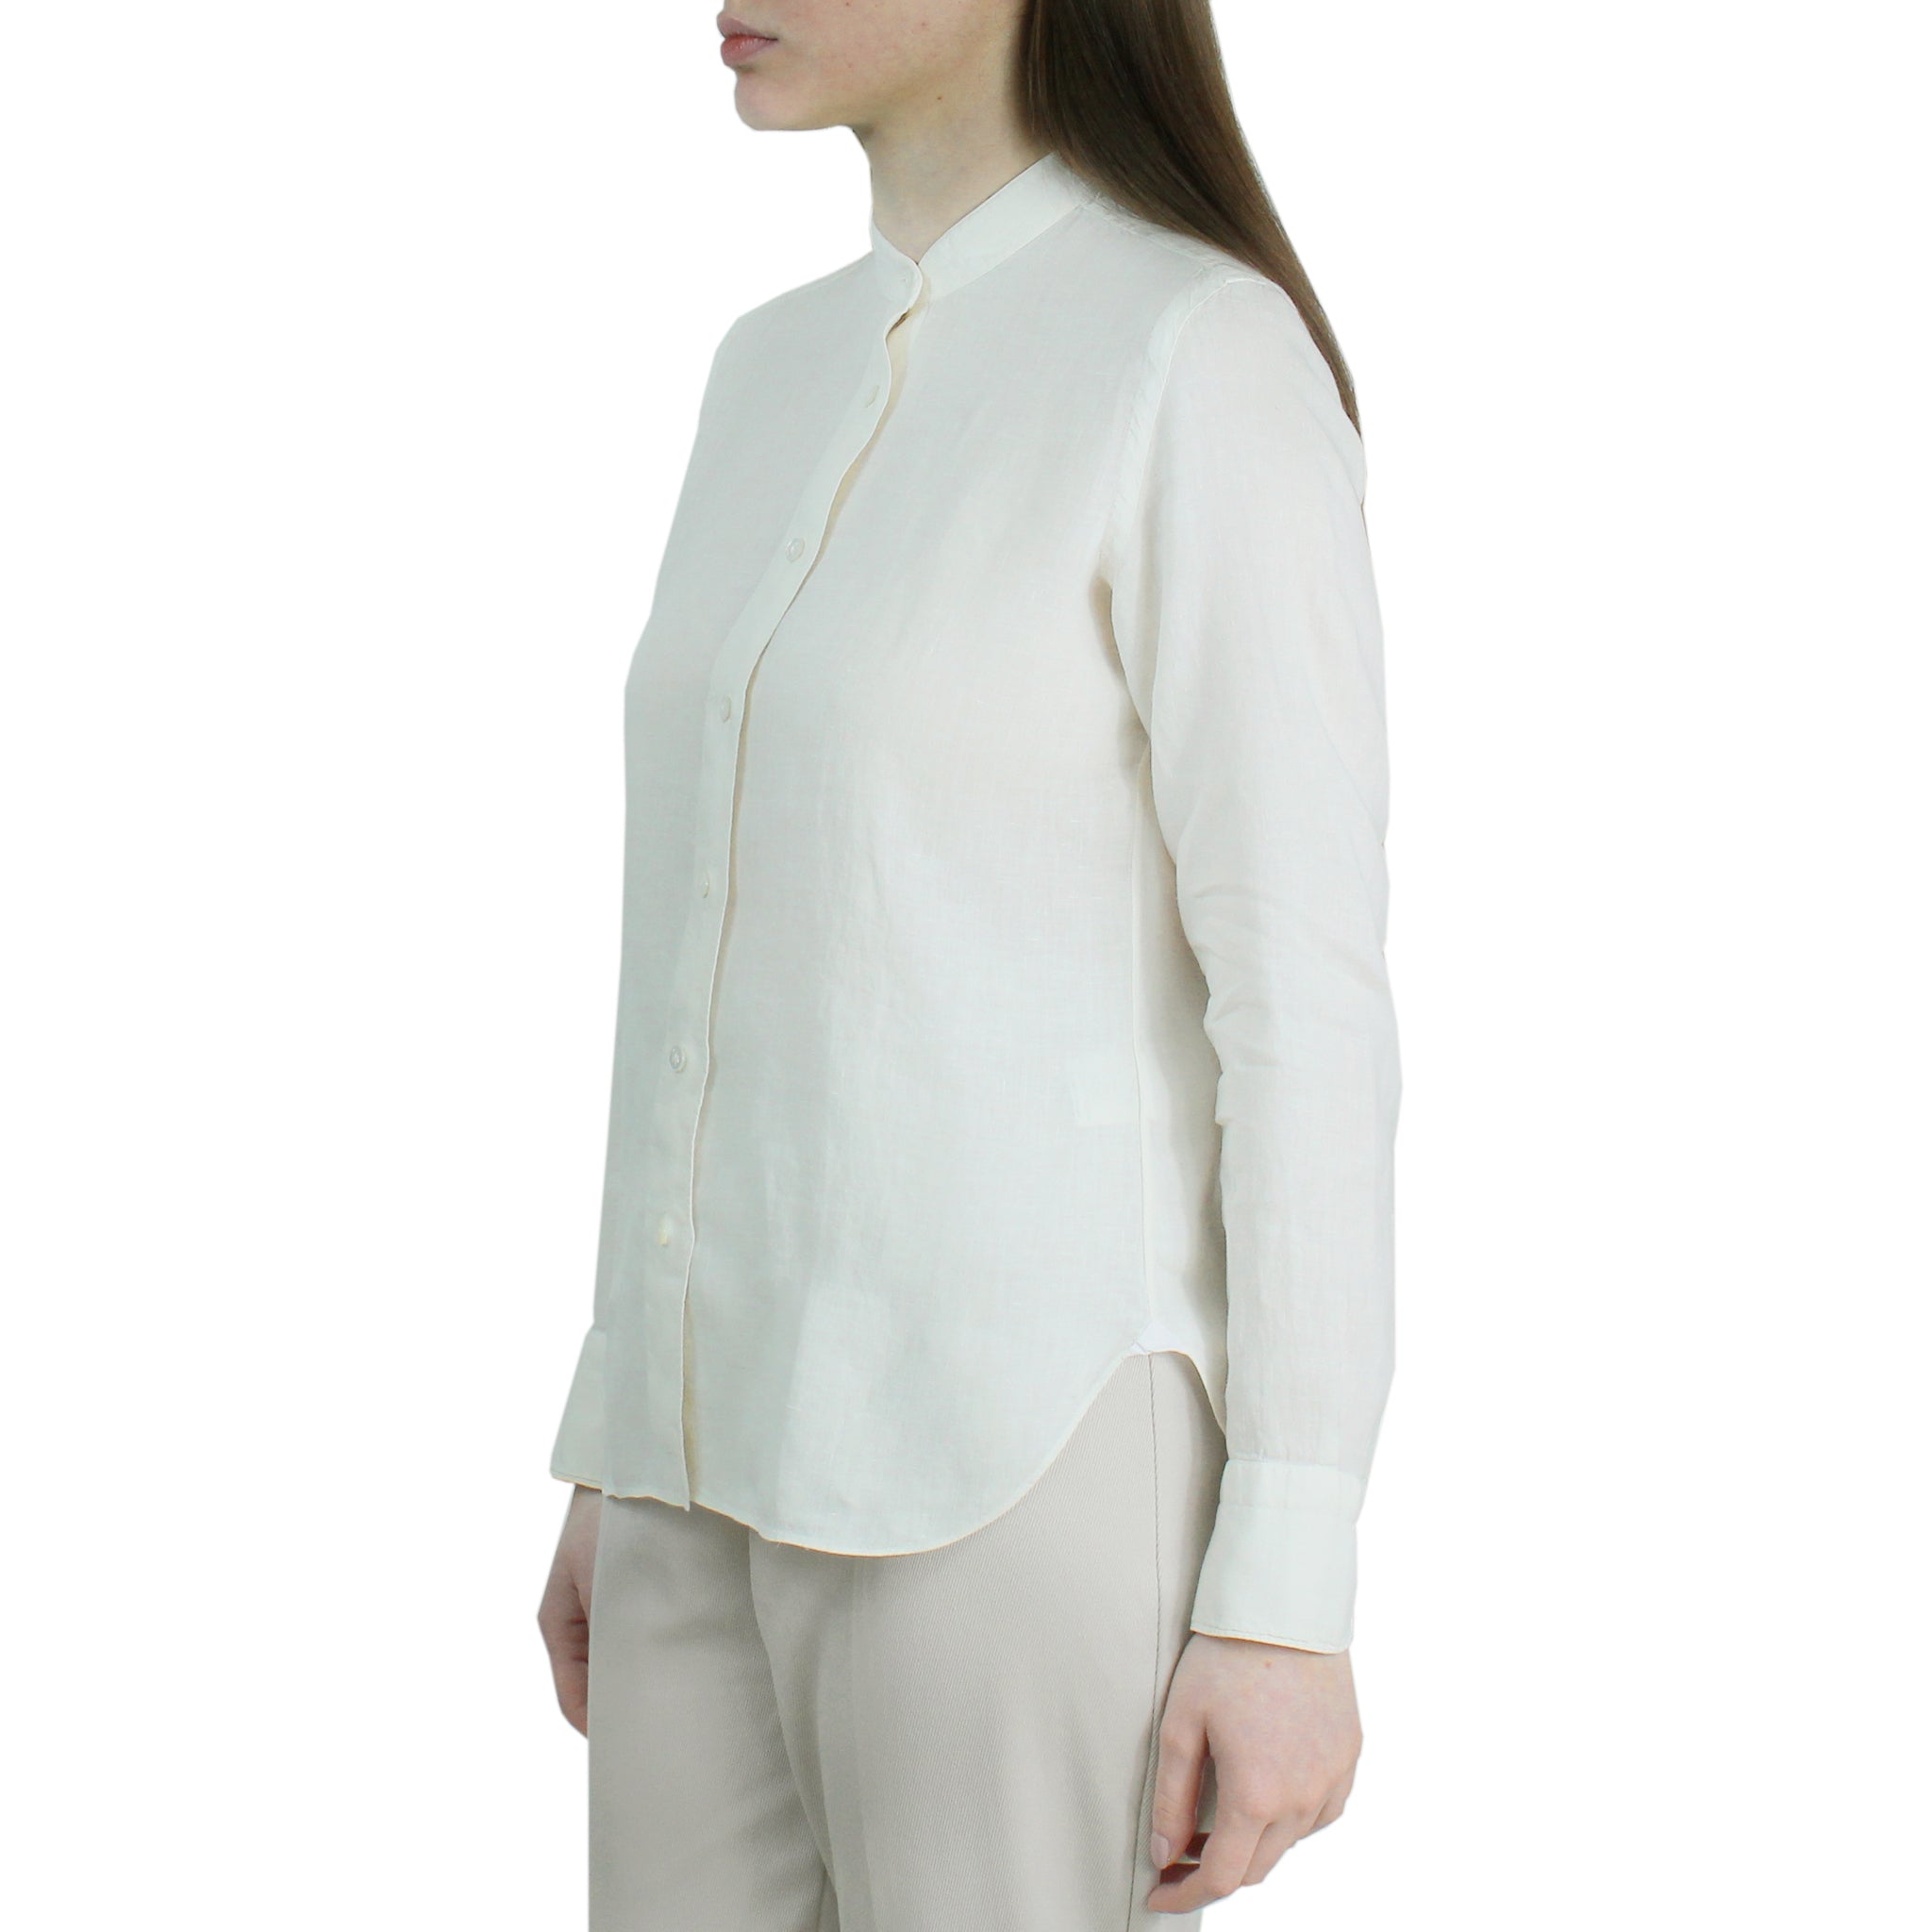 Women's slim fit linen guru collar shirt